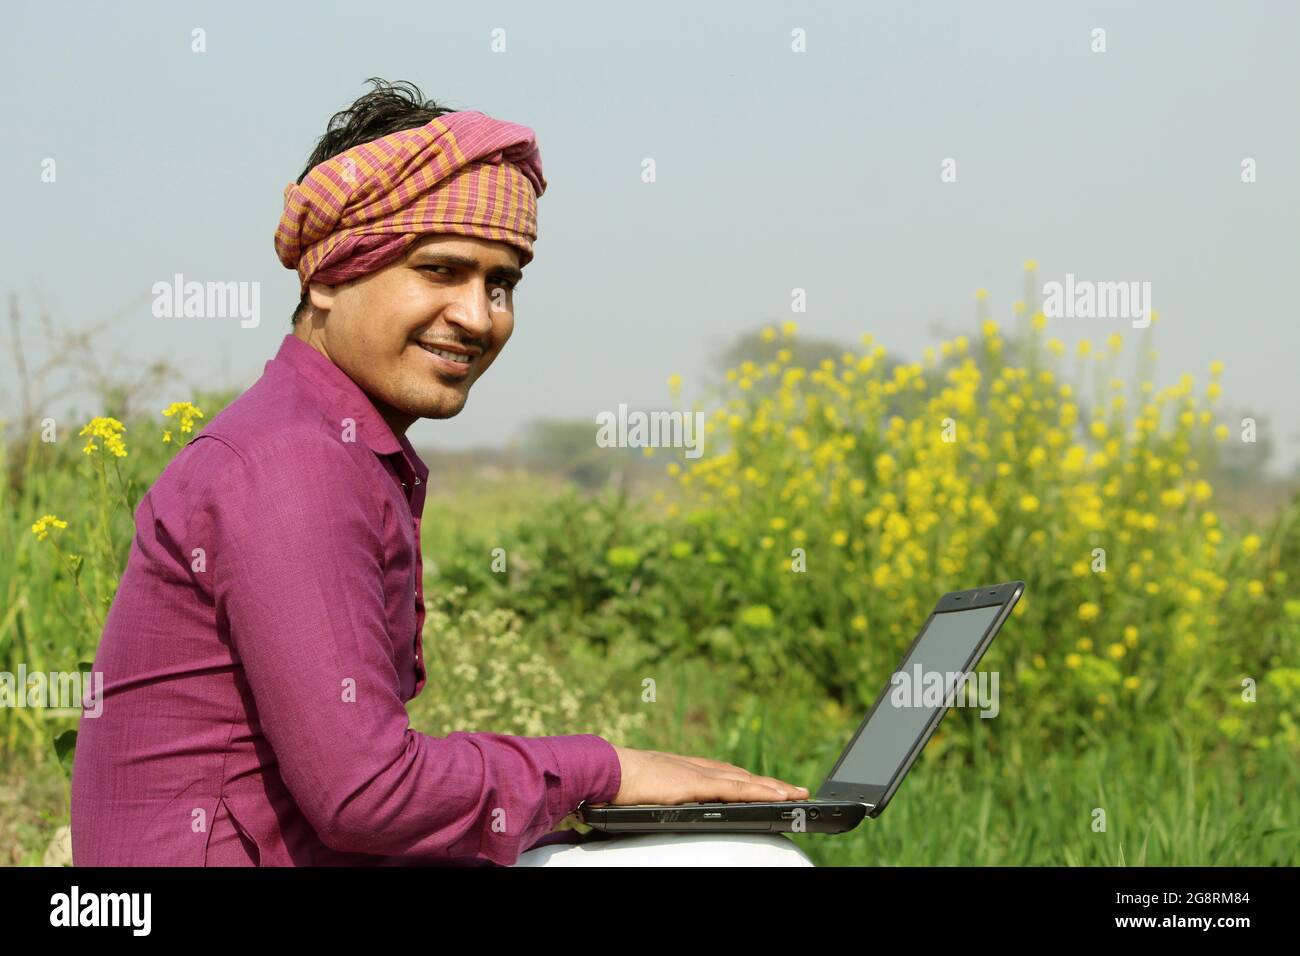 agriculteur, agriculteur indien, utilisant un ordinateur portable dans le domaine agricole Banque D'Images